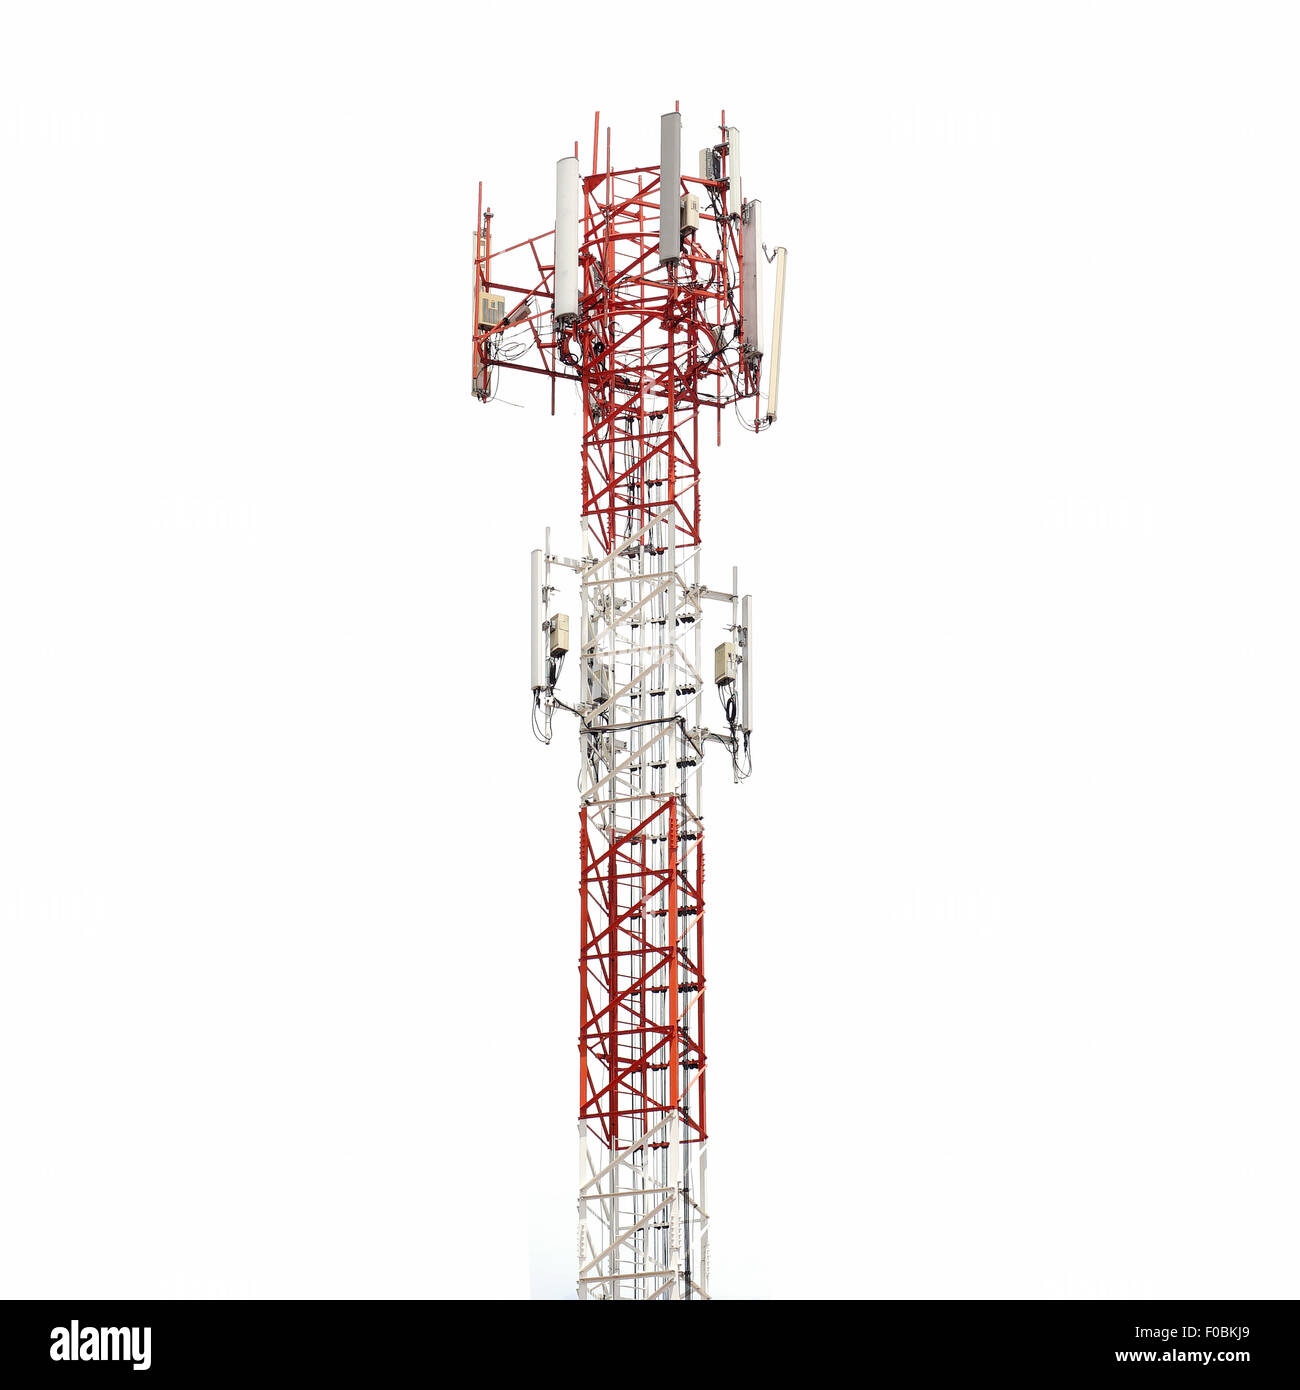 telecommunication tower isolated on white background Stock Photo